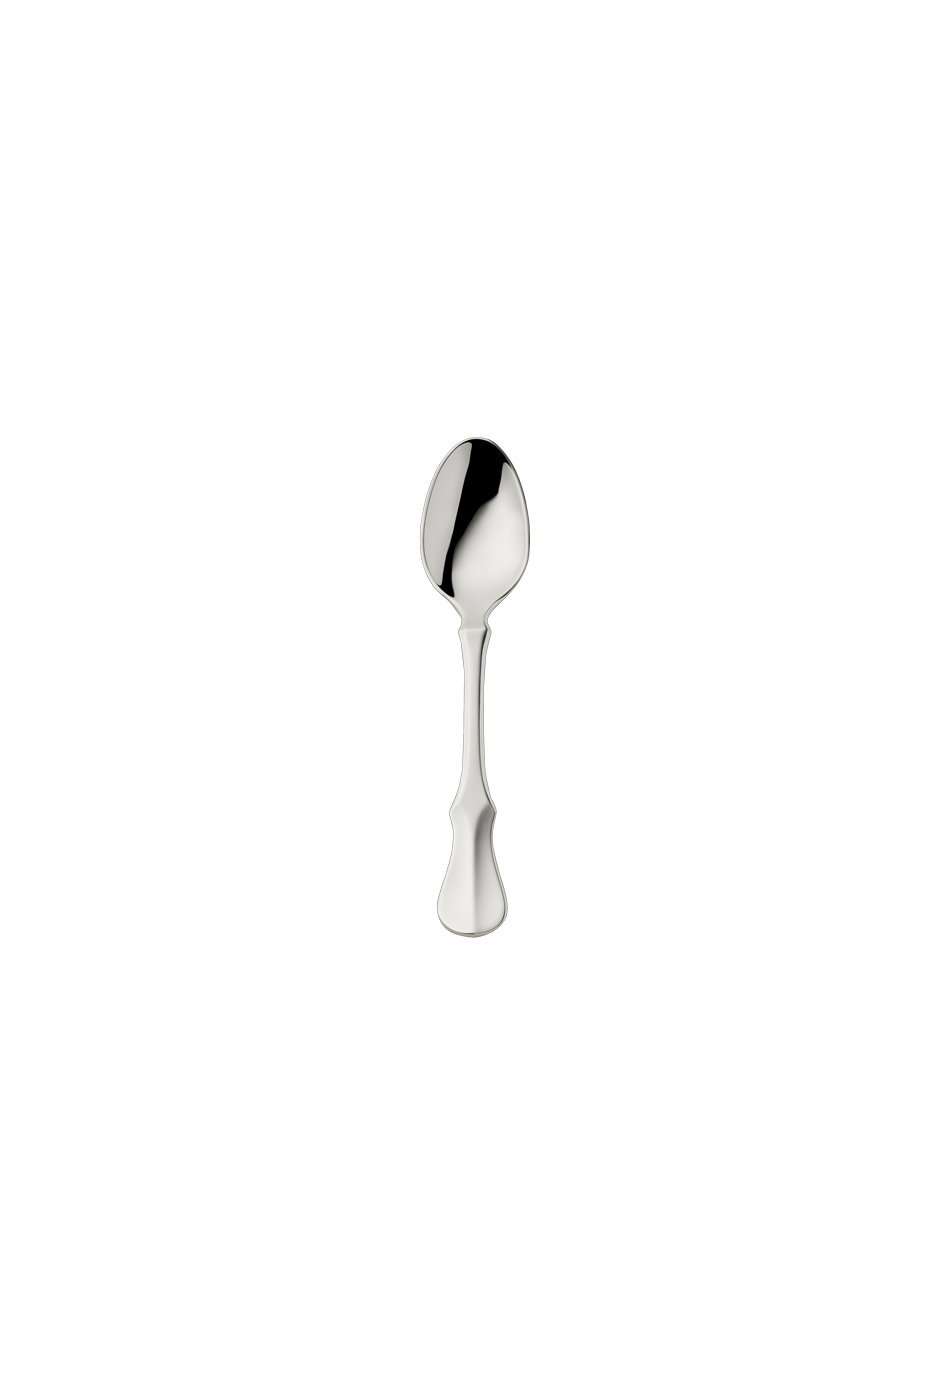 Alt-Kopenhagen Mocha Spoon 10,5 Cm (150g massive silverplated)